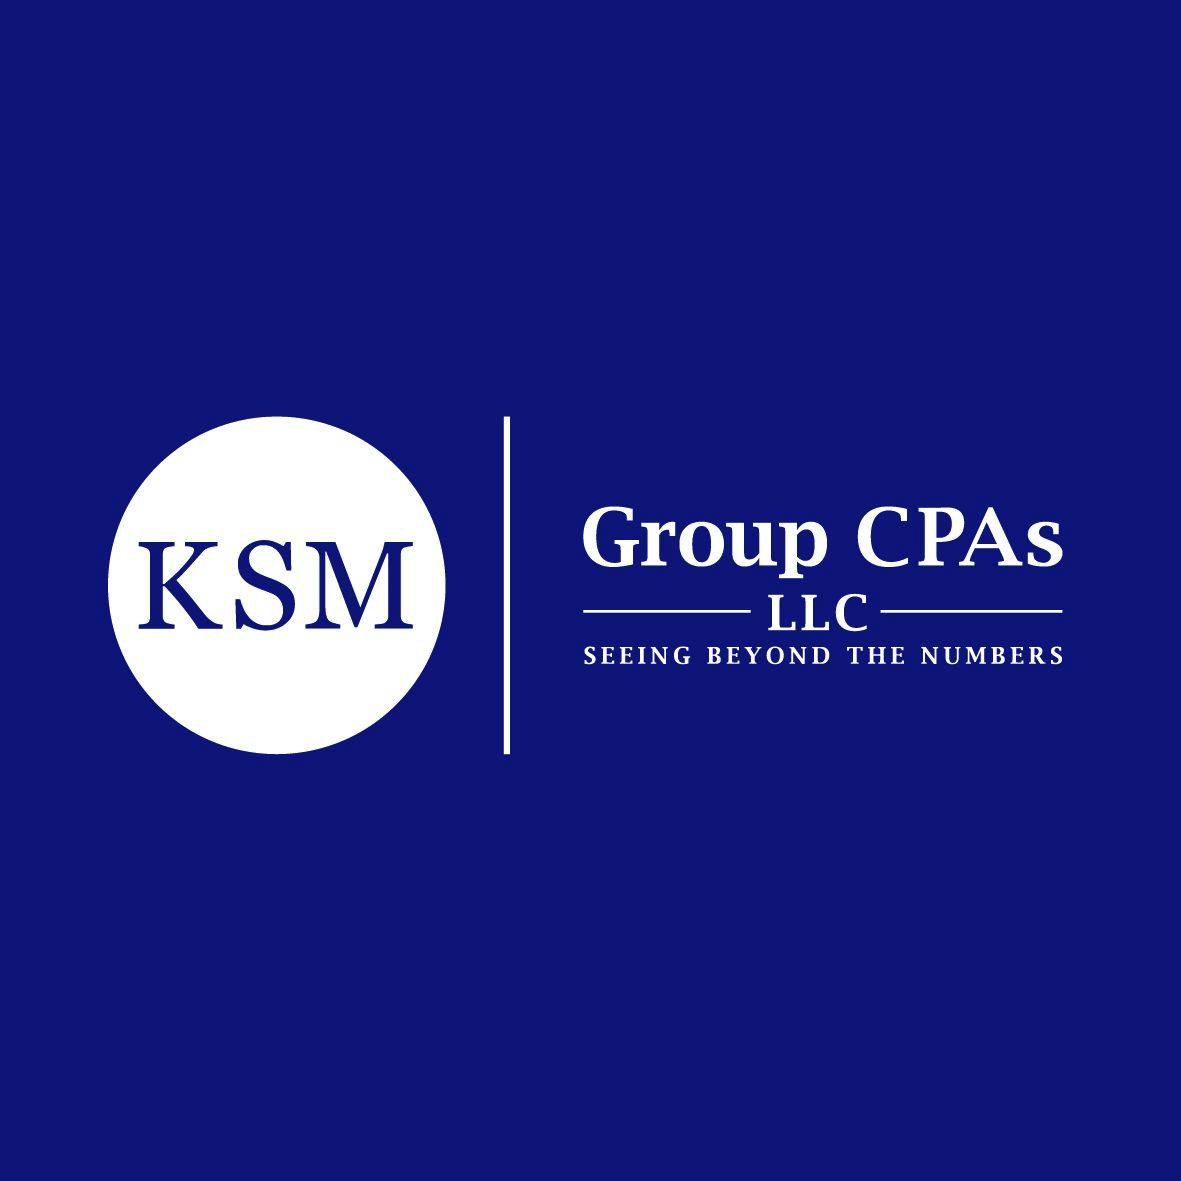 KSM Group CPAs logo